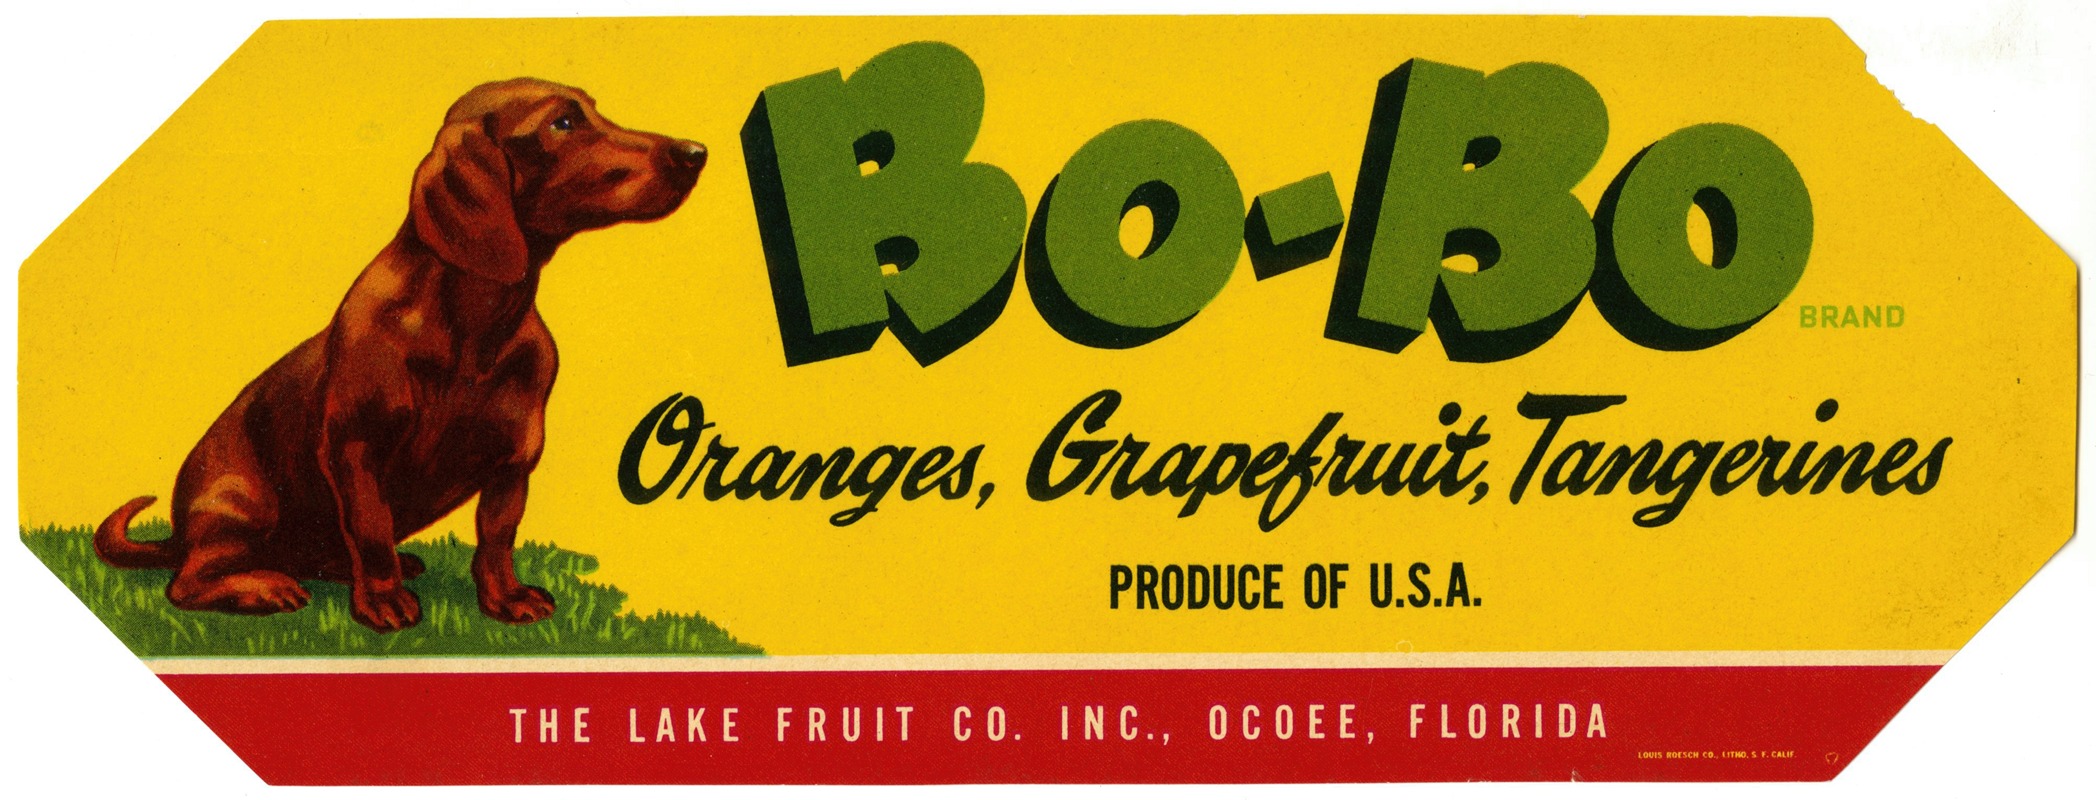 Anonymous - Bo-Bo Brand Citrus Label